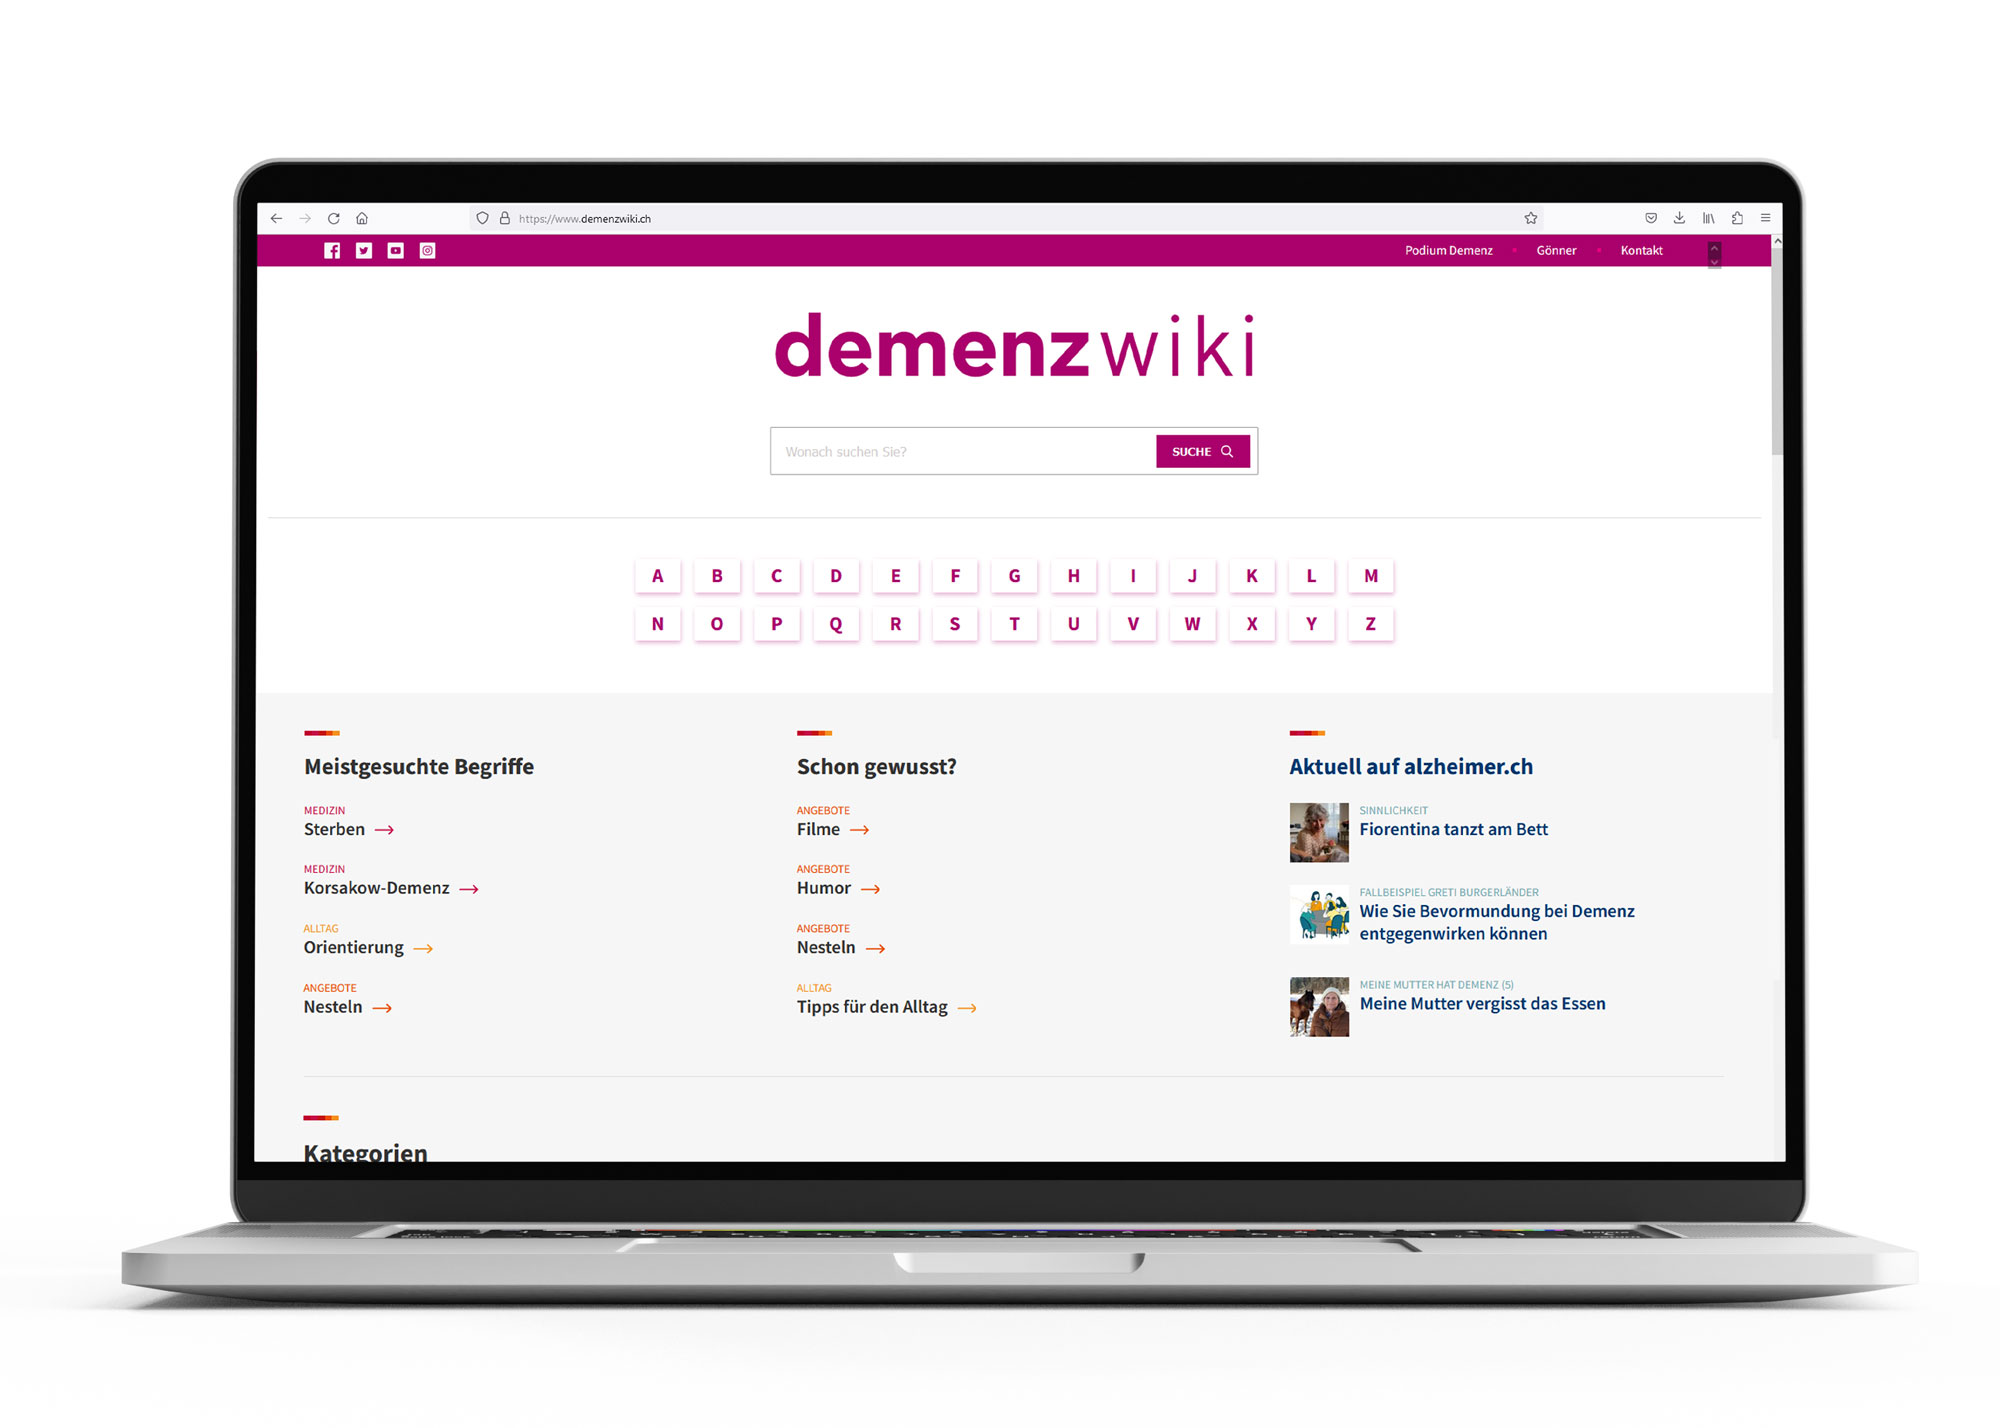 Website demenzwiki